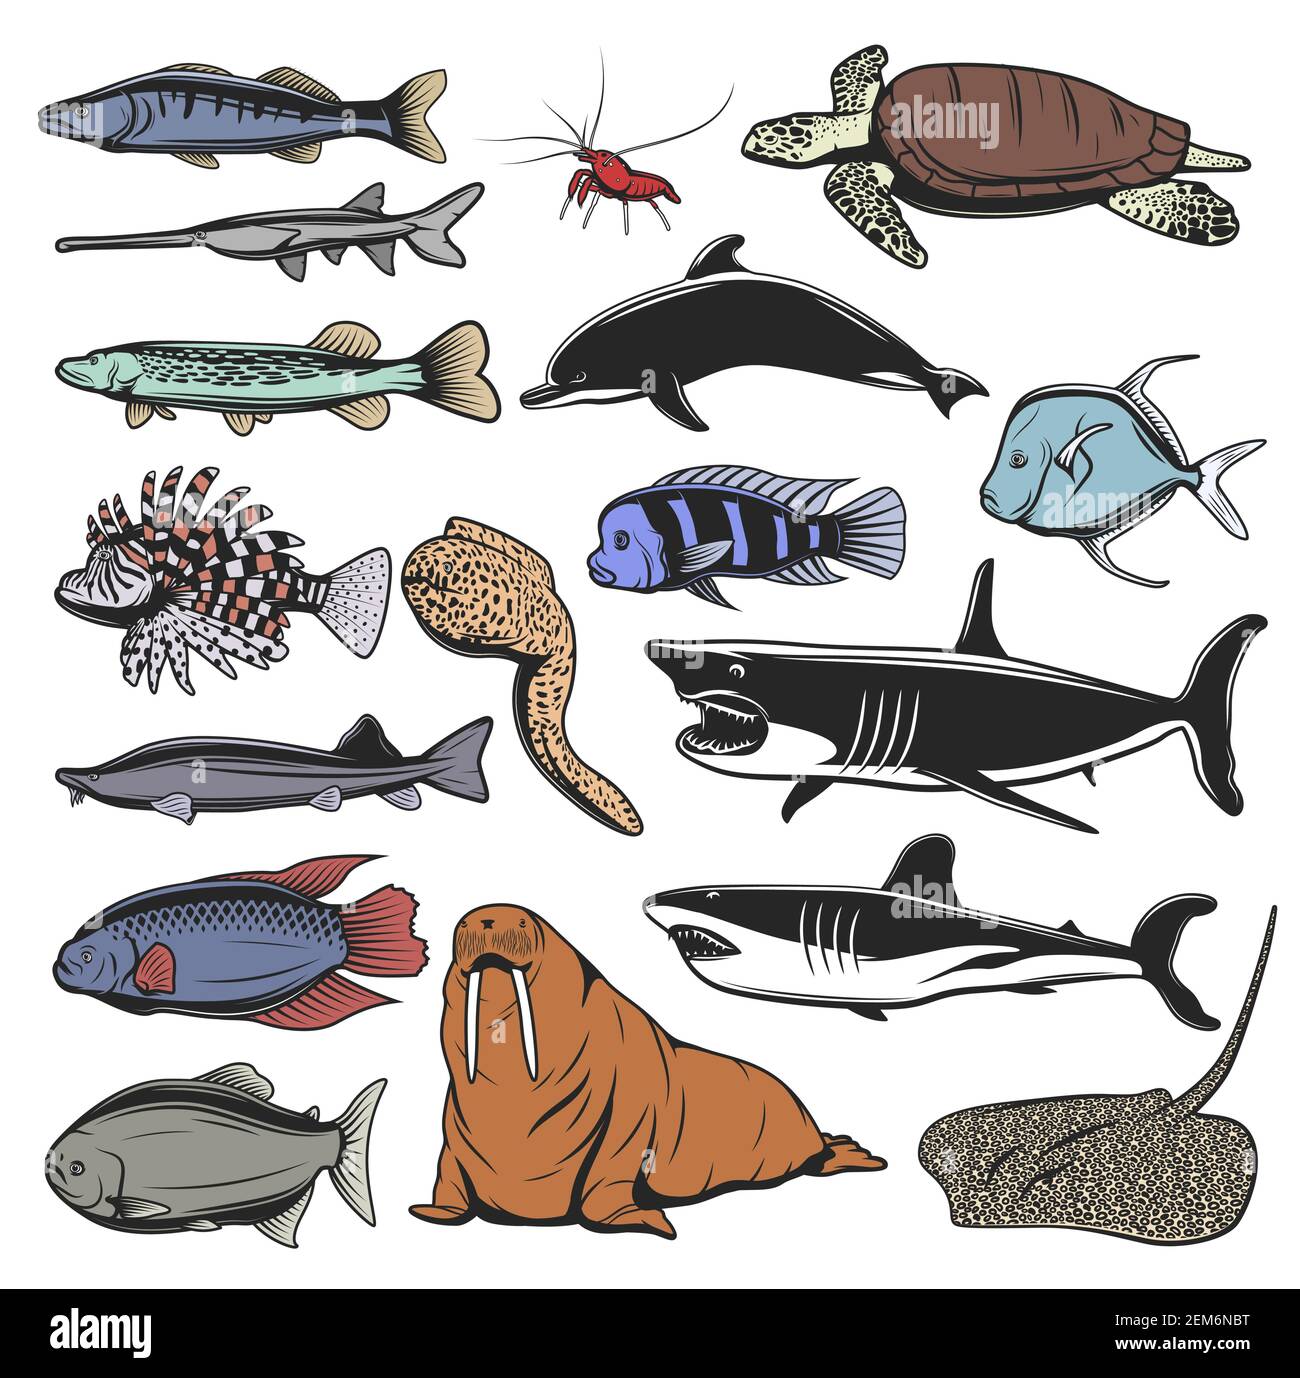 Animali marini, pesci e tartarughe personaggi cartoni animati isolati. Tartaruga marina vettoriale, squali oceanici e delfini, gamberi o gamberi, razze, luccio e salmone, warr Illustrazione Vettoriale